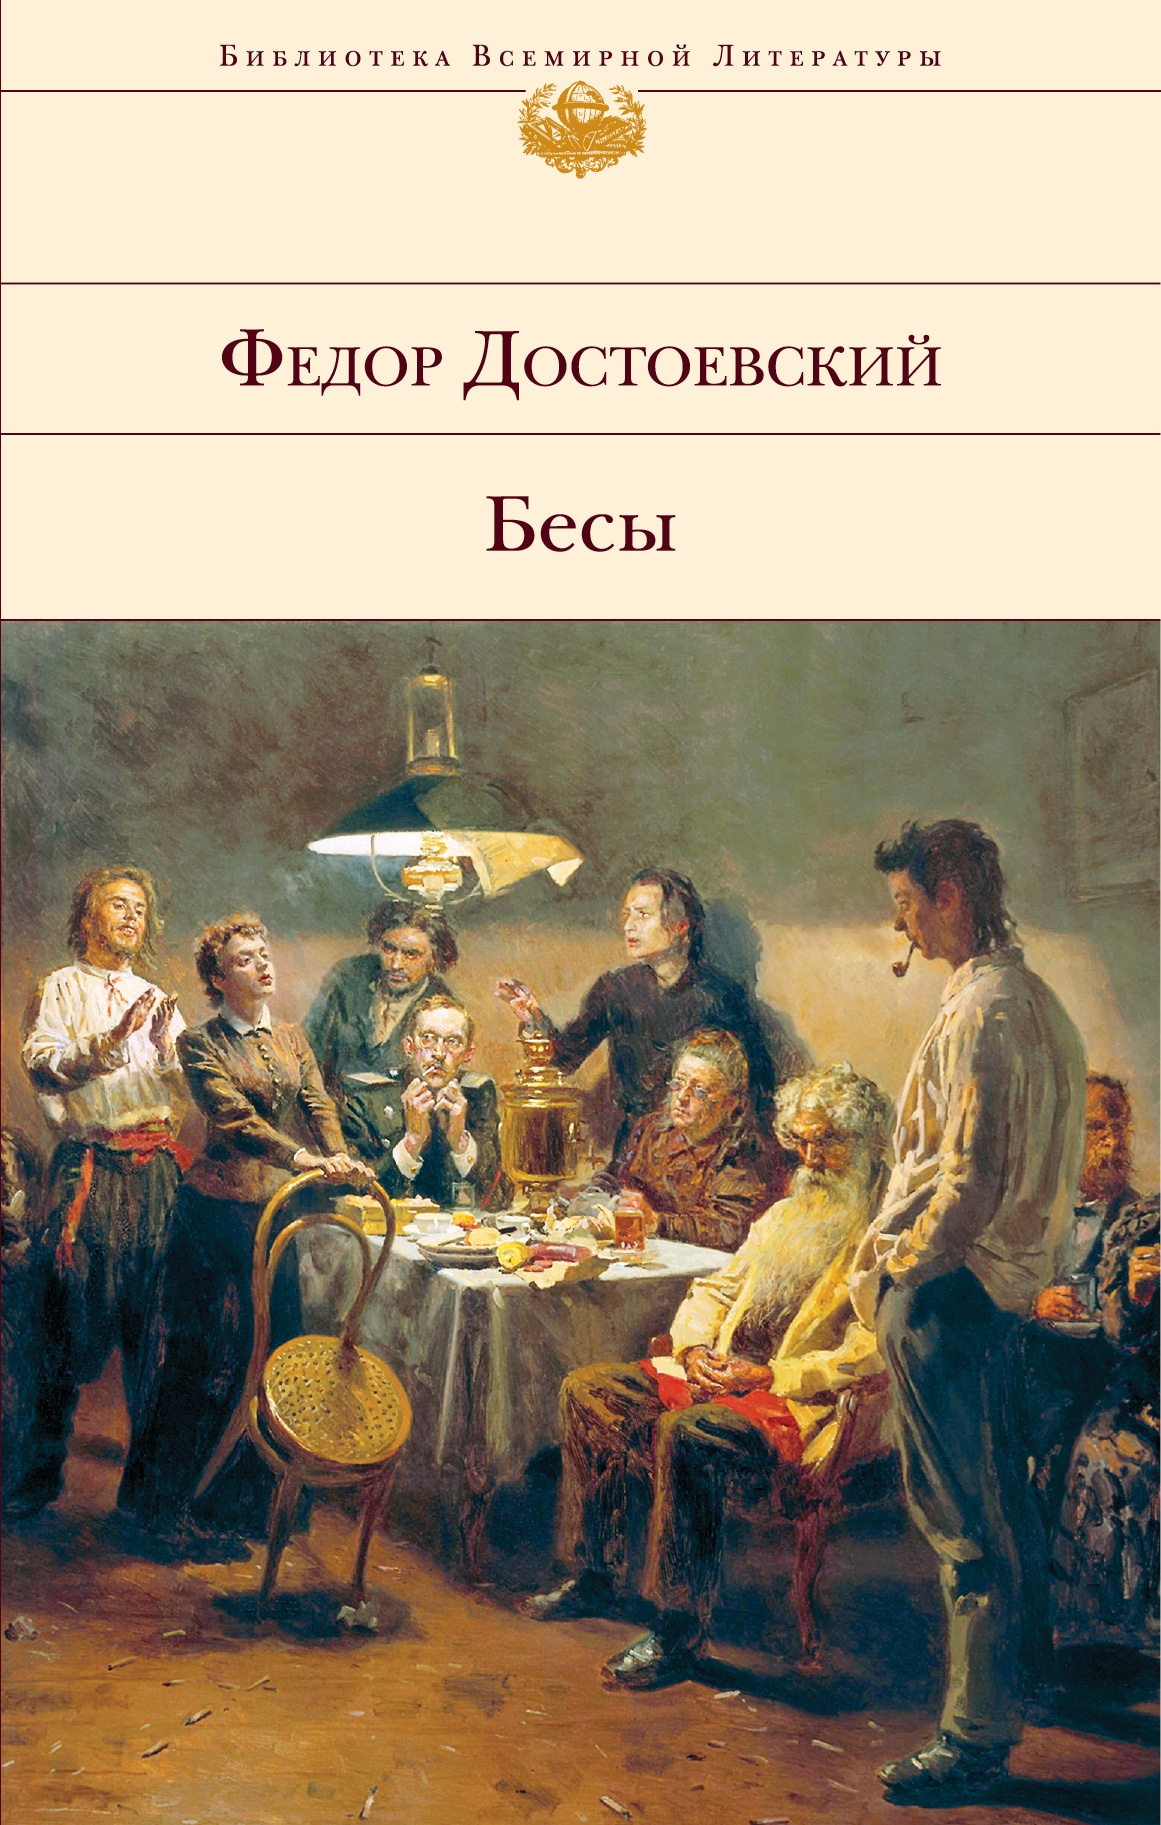 Книга «Бесы» Федор Достоевский — 19 июля 2021 г.